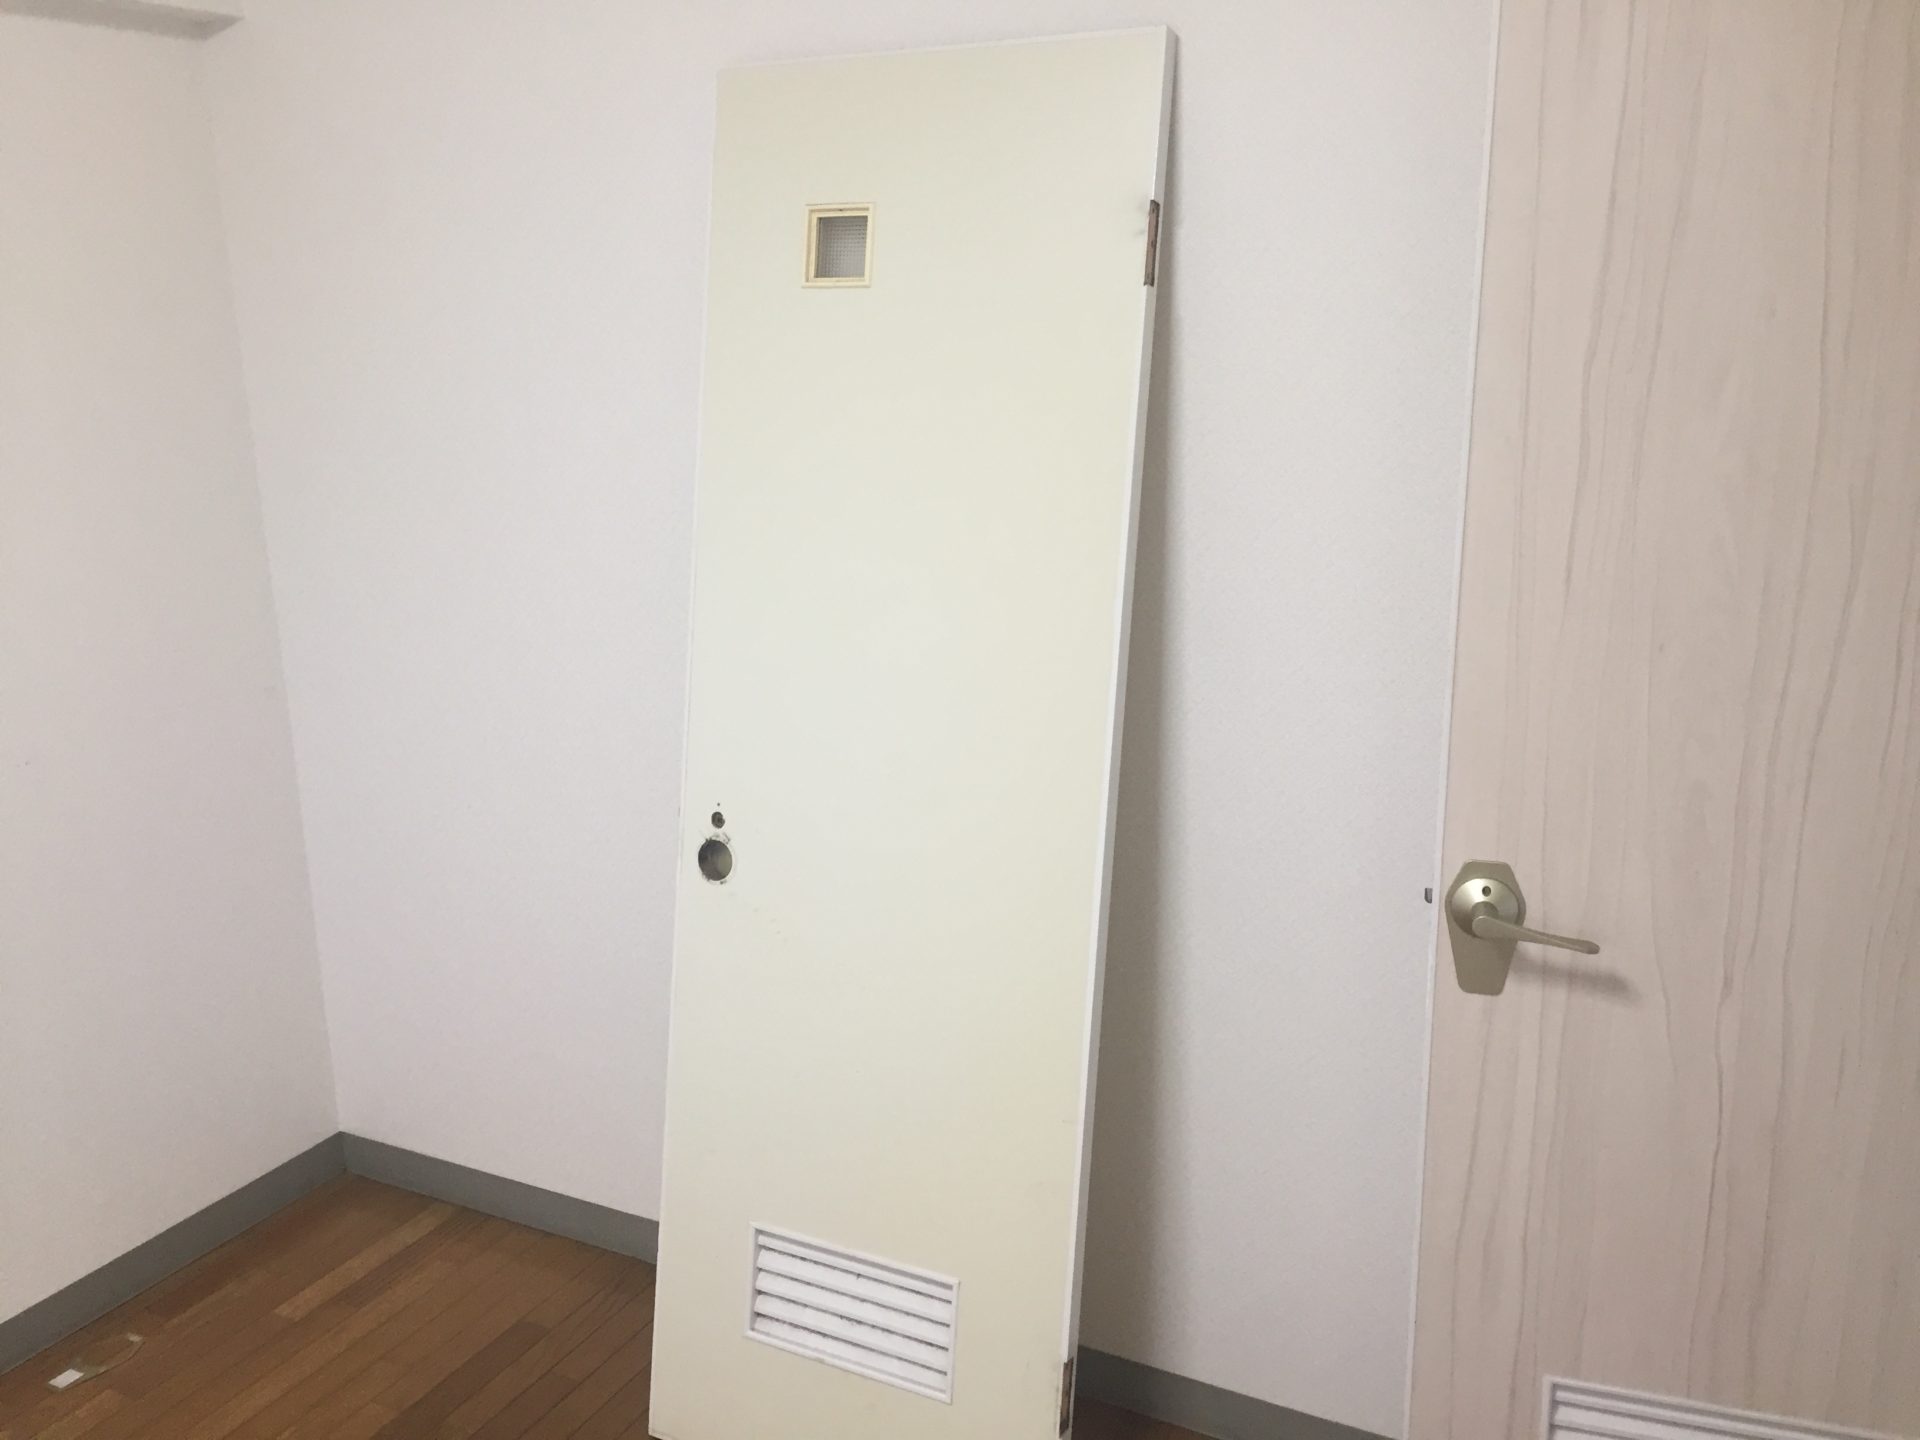 Diy トイレのドアに他のドアと同じ柄のシートを貼りました こちらの部屋の他のドアはすべて明るめの木目柄の壁紙が貼ってありこちらのトイレのドアだけクリーム色一色のドアだったので少し浮いていました これはトイレのドアの素材だけが汚れを防止する目的もありベニア